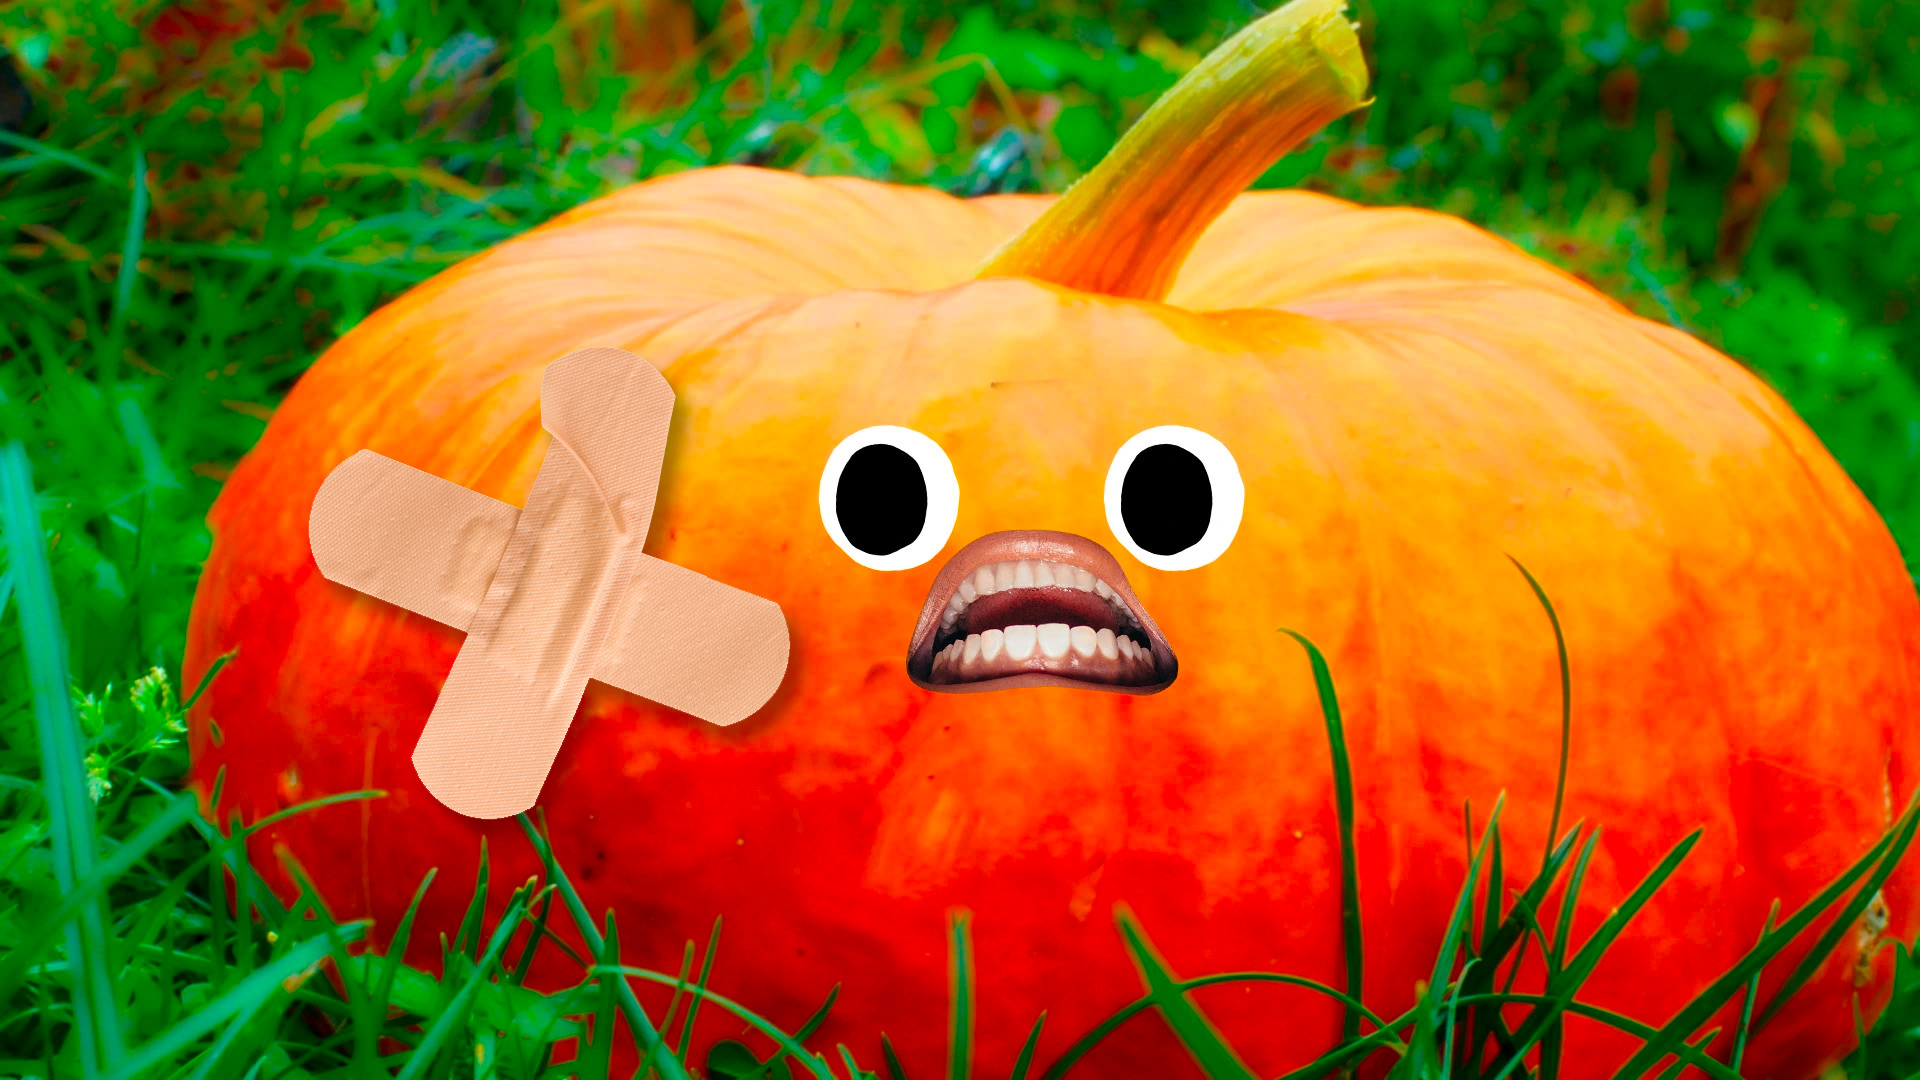 A broken pumpkin